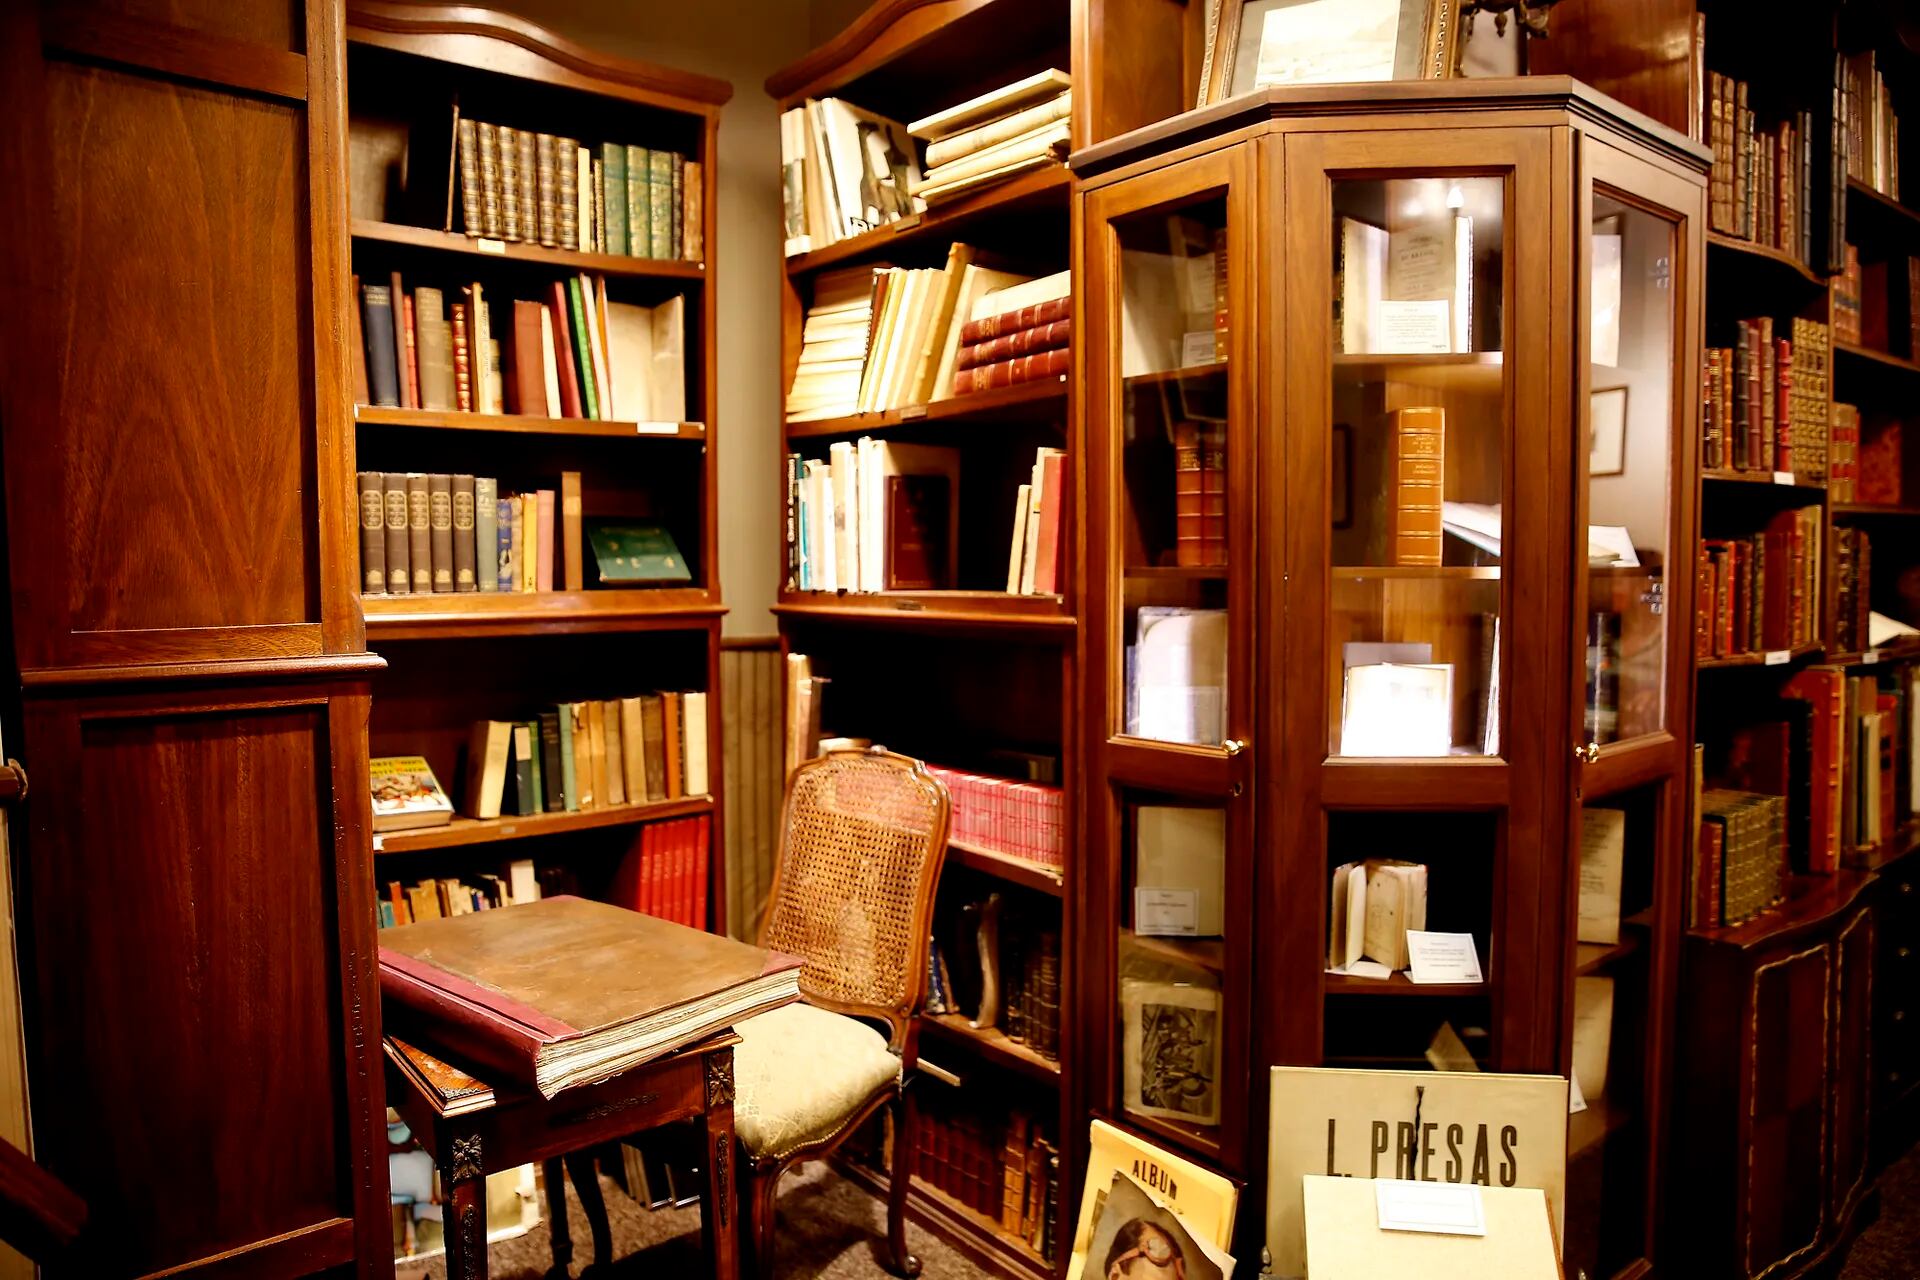 La librería es un tesoro para los amantes de las obras curiosas, raras y únicas.
